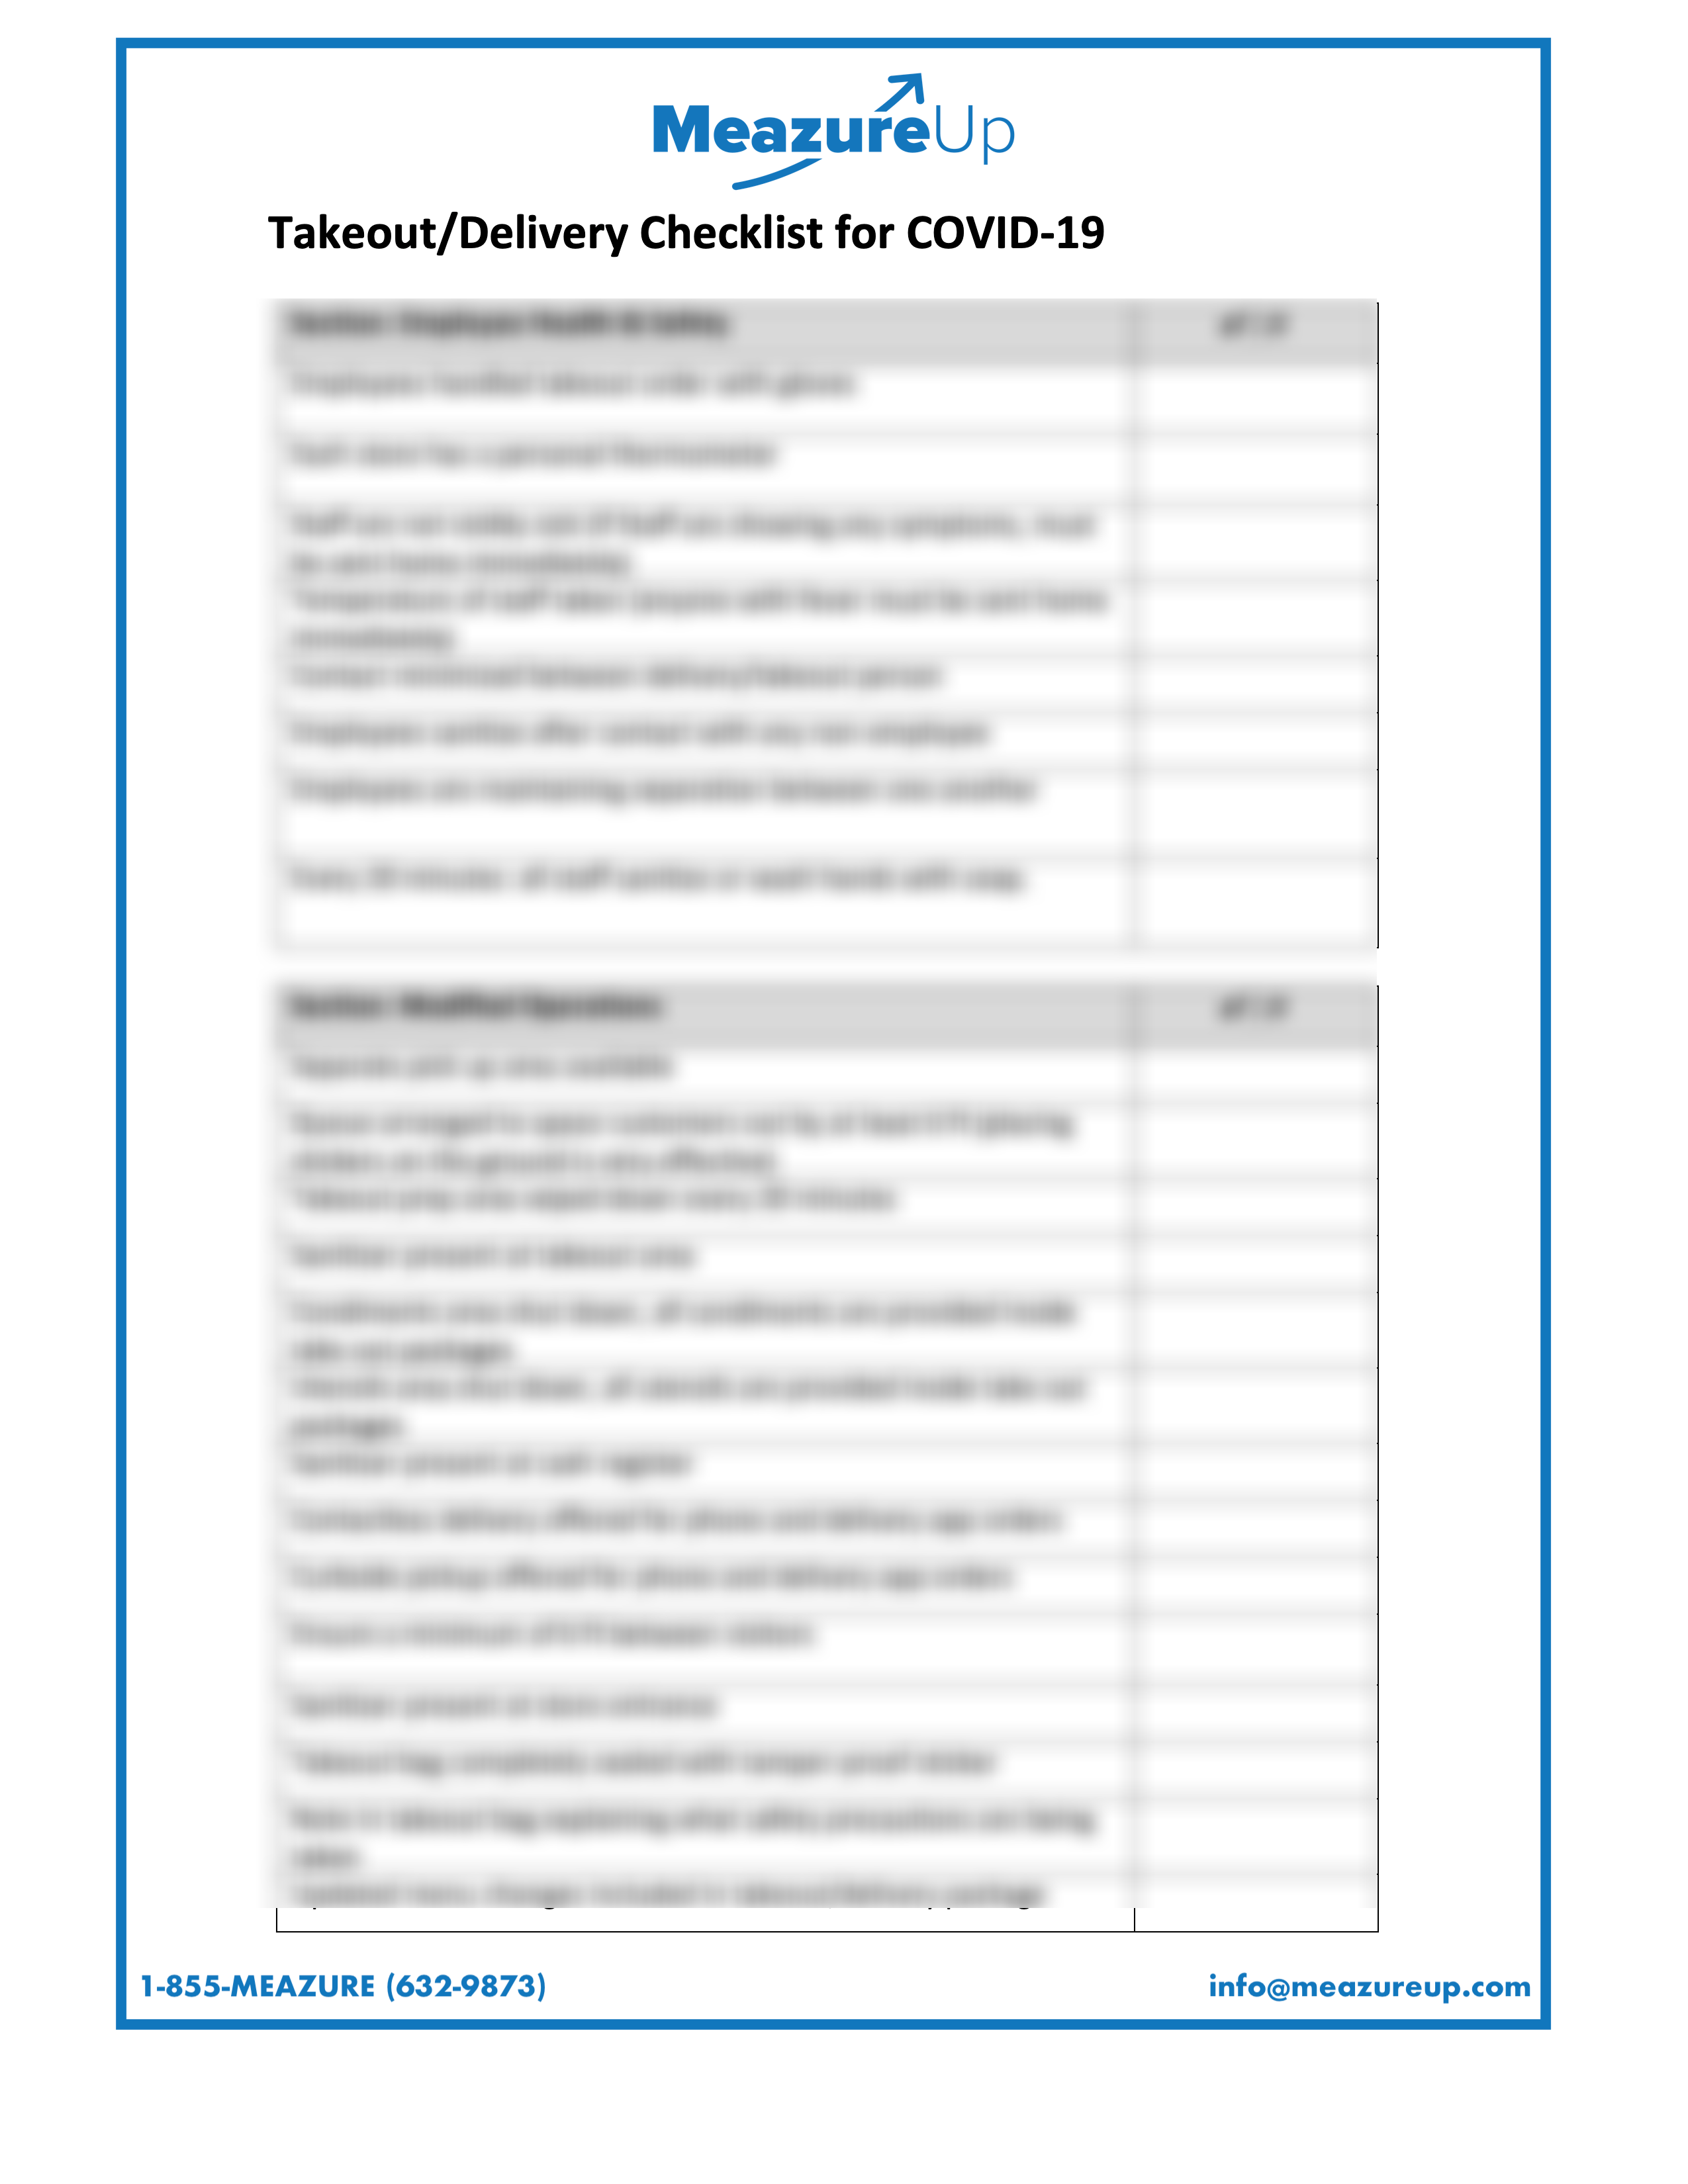 blurred covid checklist